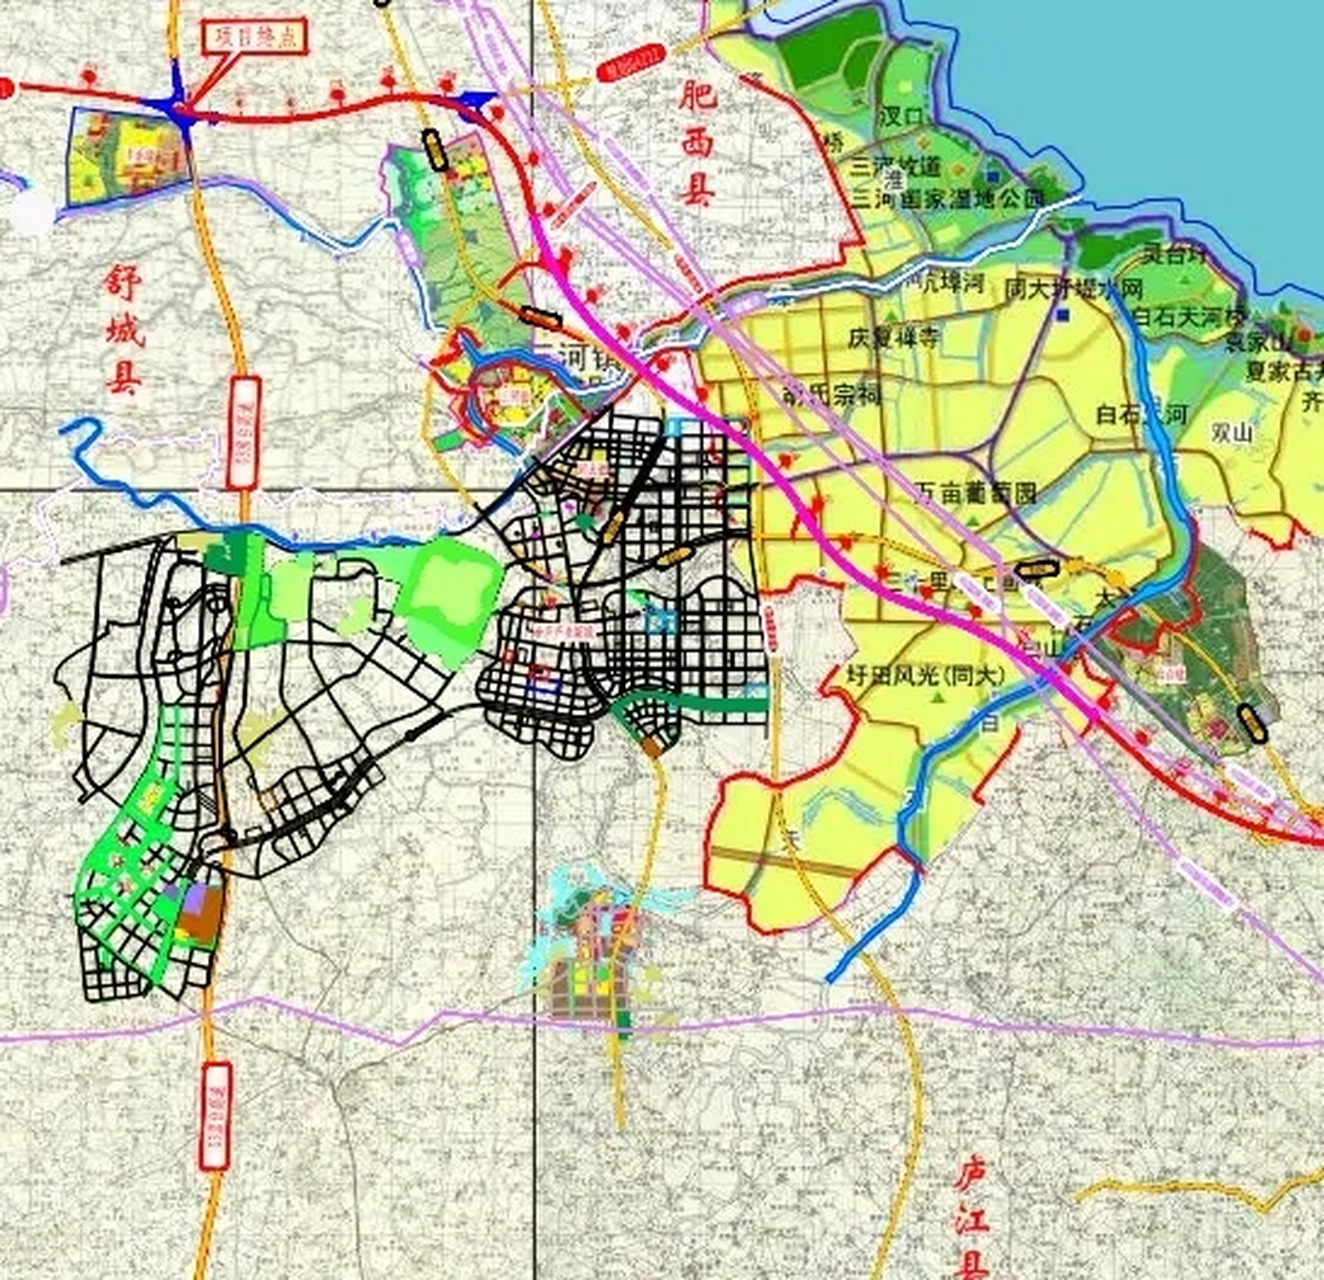 盛桥镇地图图片